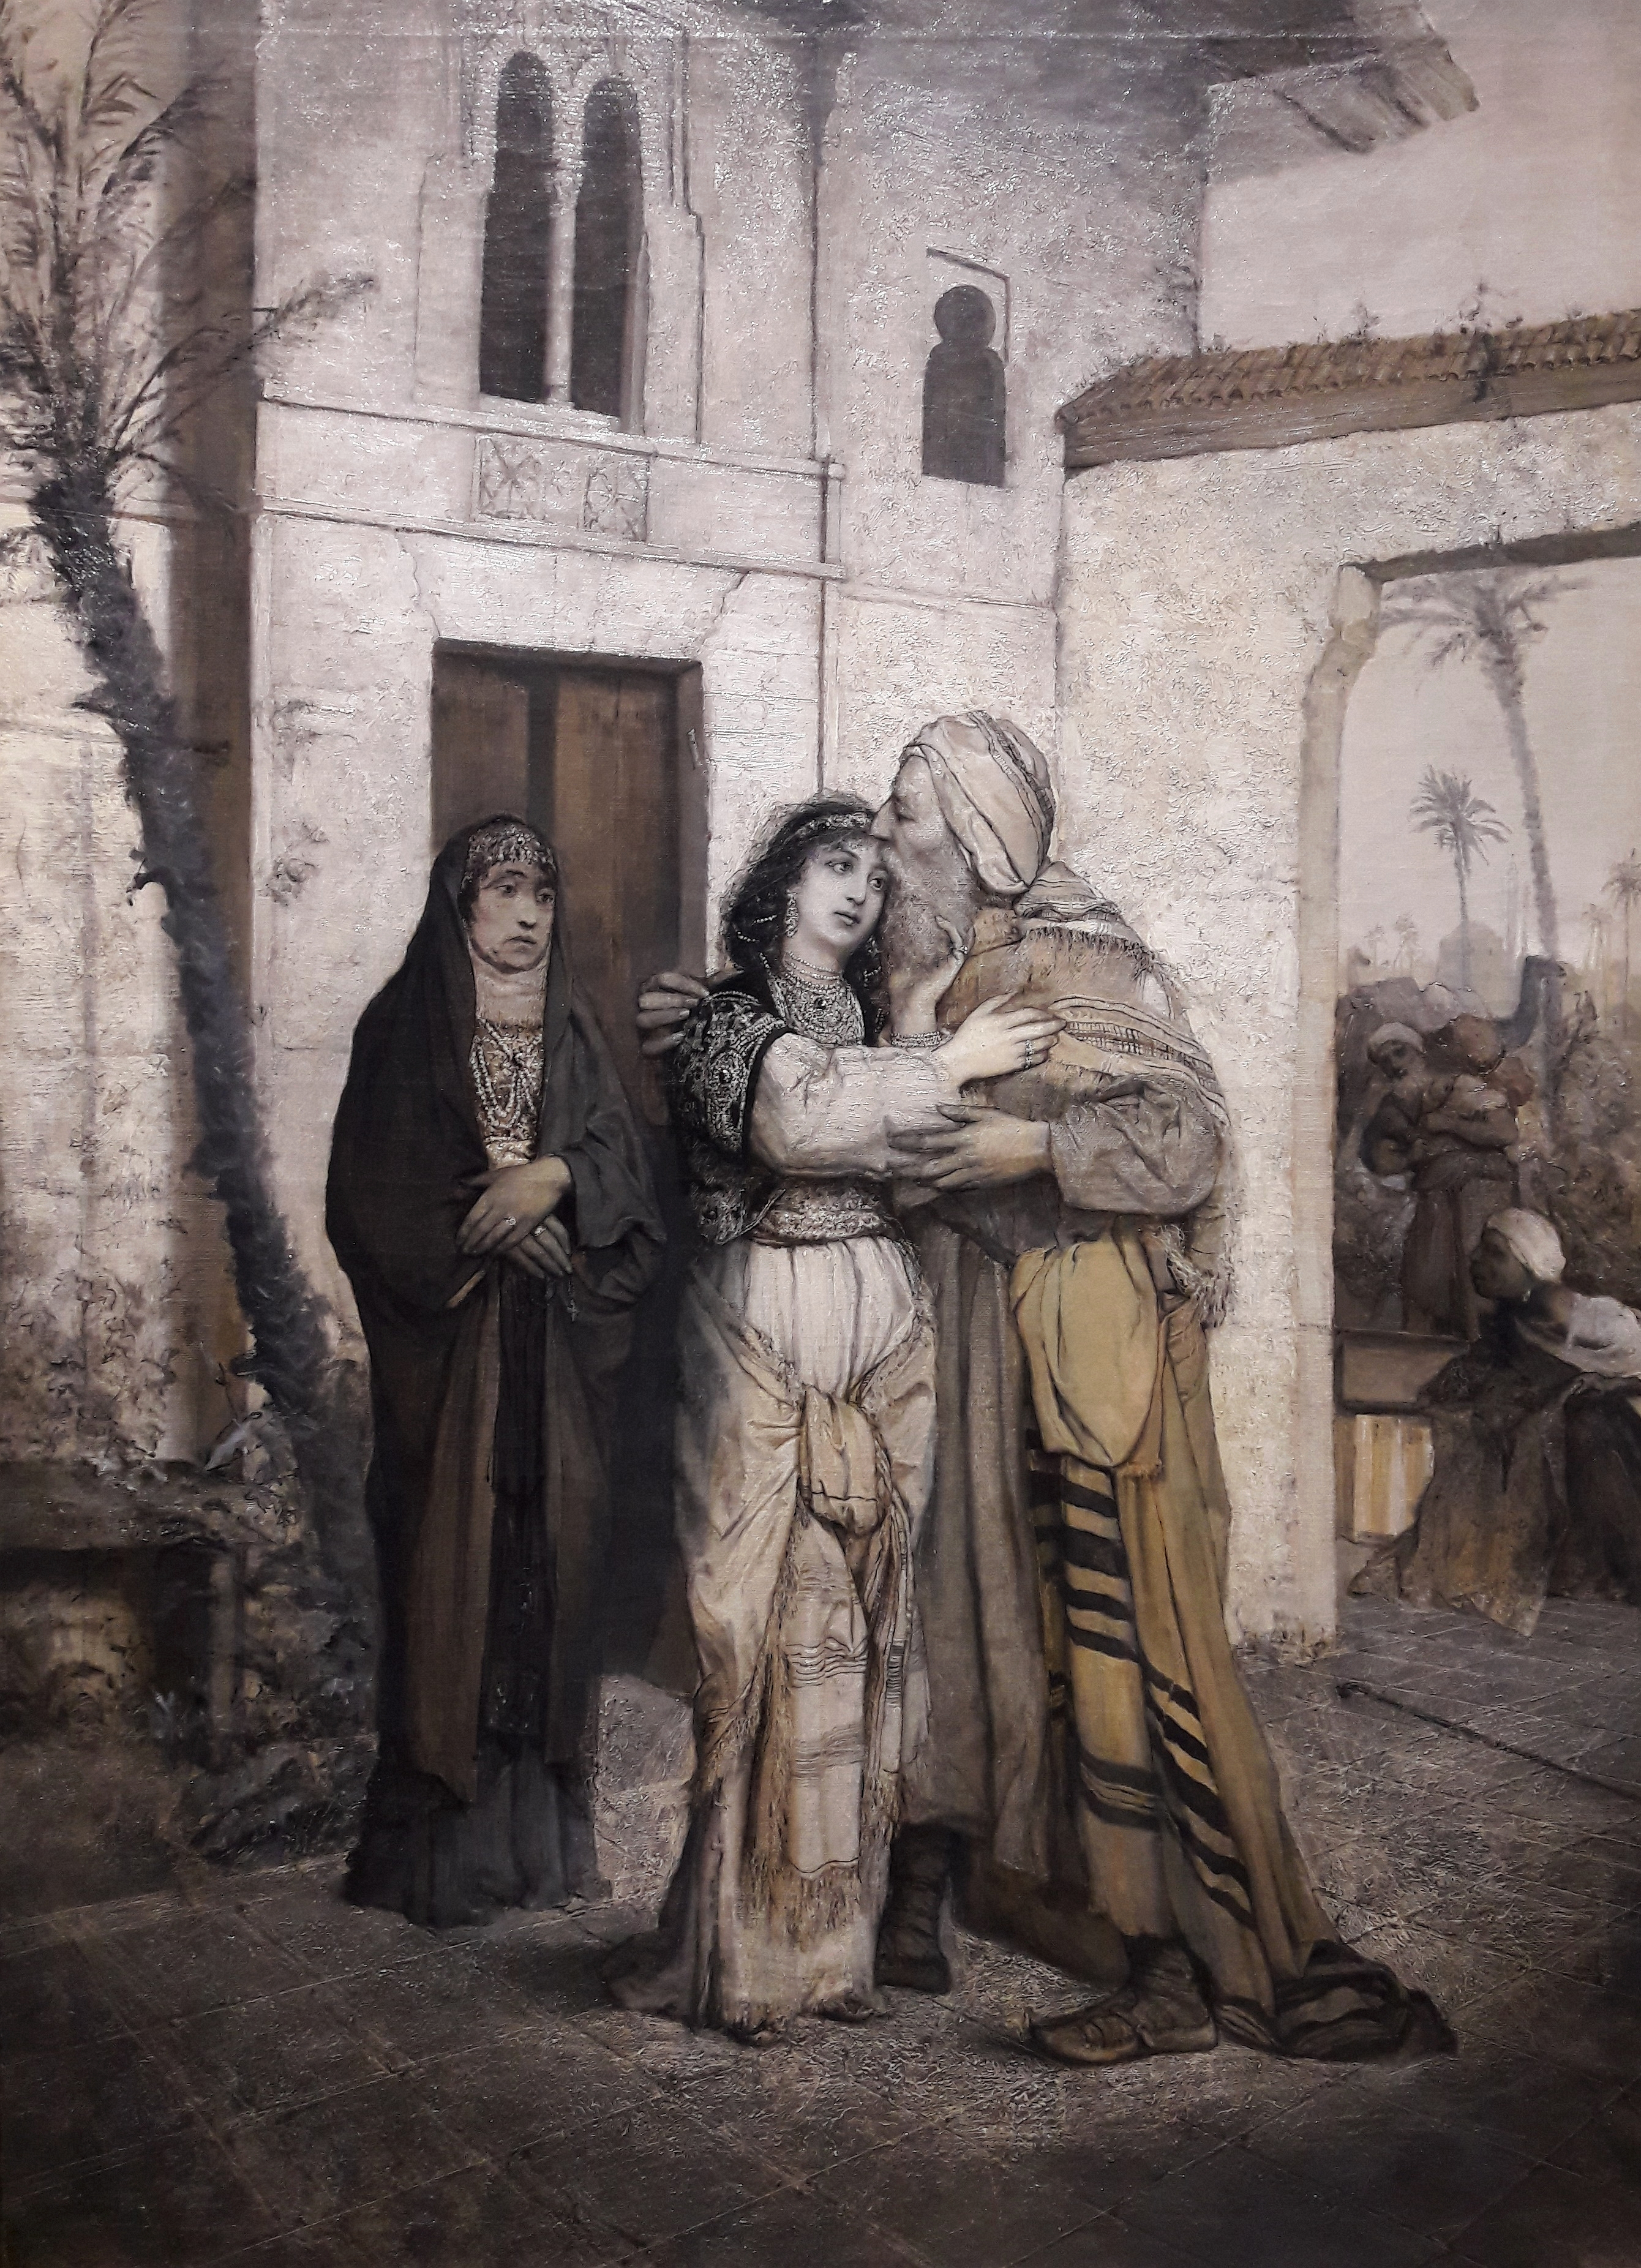 Реча приветствует своего отца, 1877, 110 x 80 см, масло на холсте, Национальный музей в Варшаве